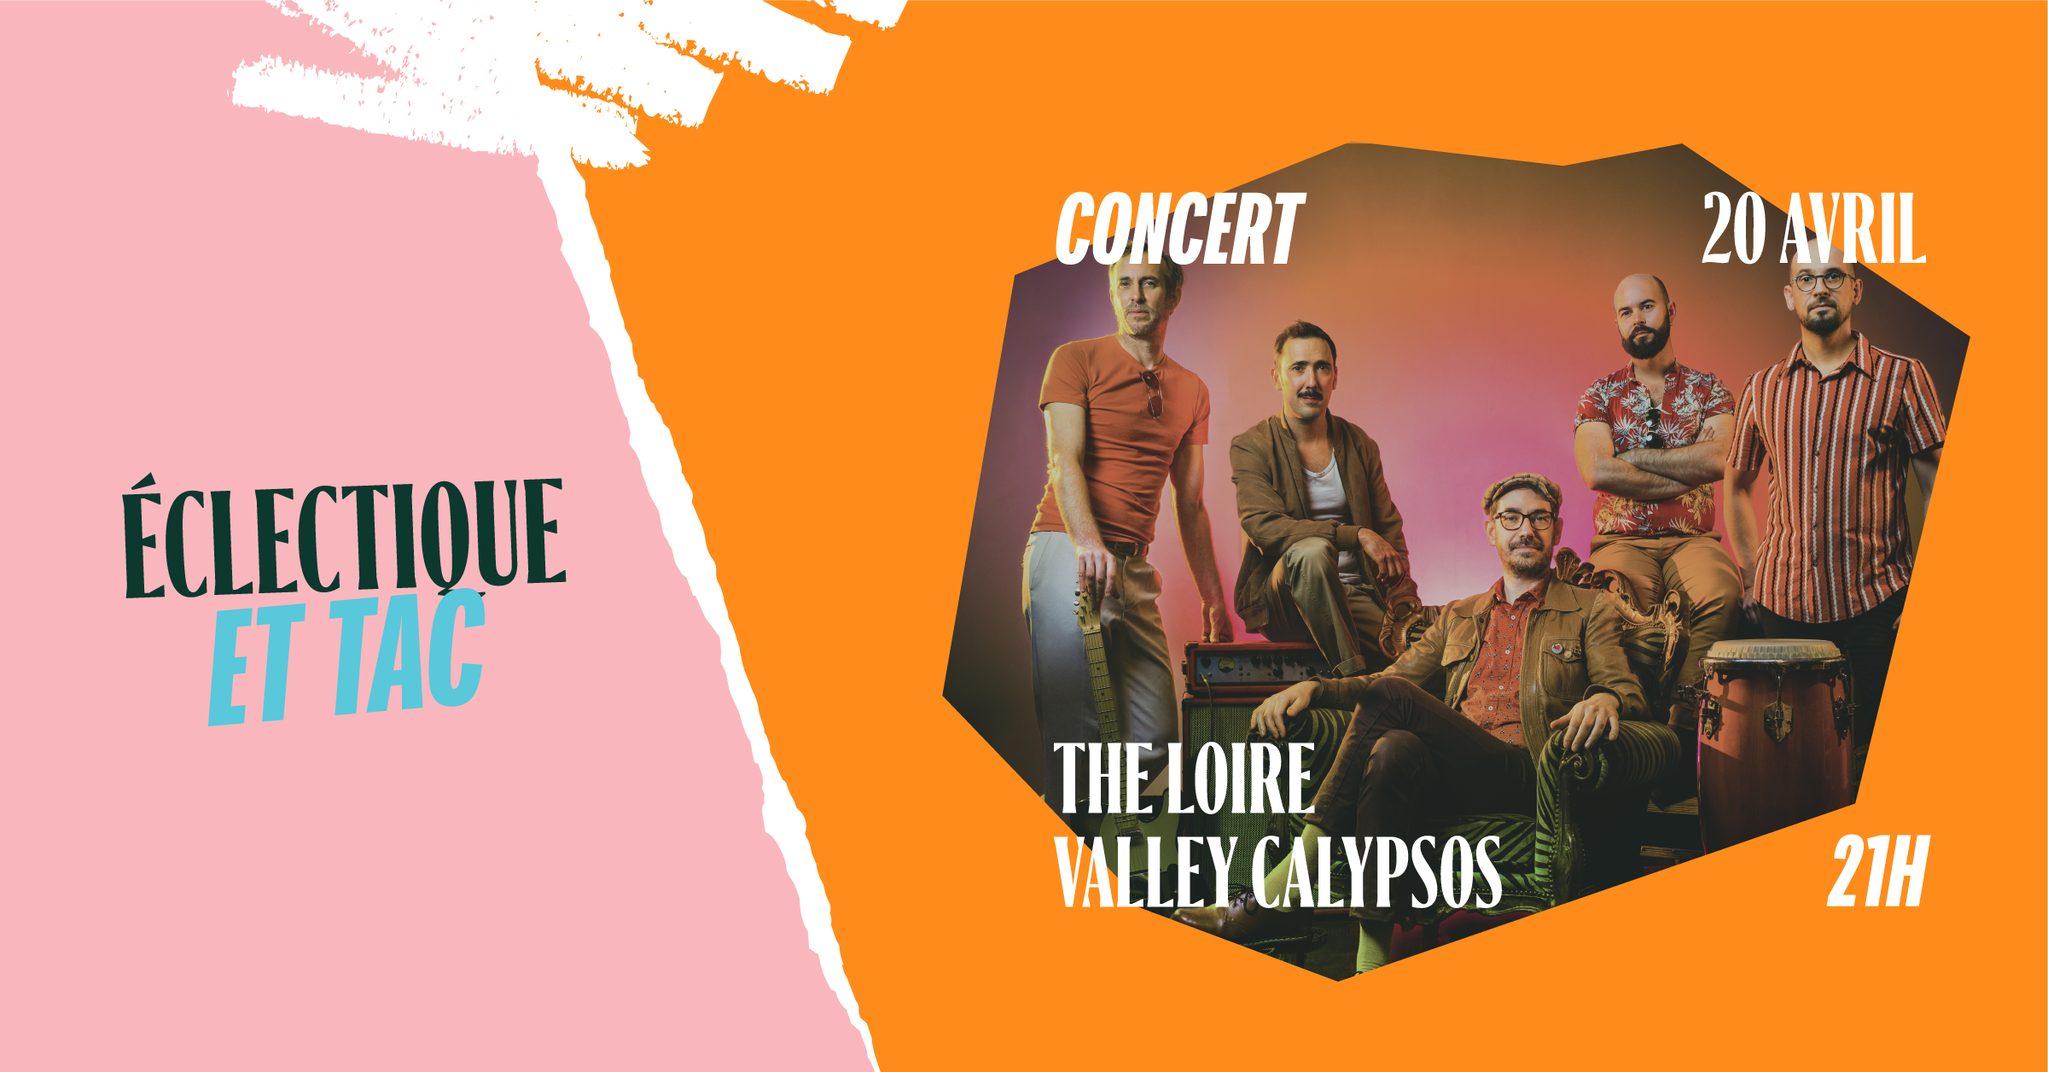 the loire valley calypsos concert